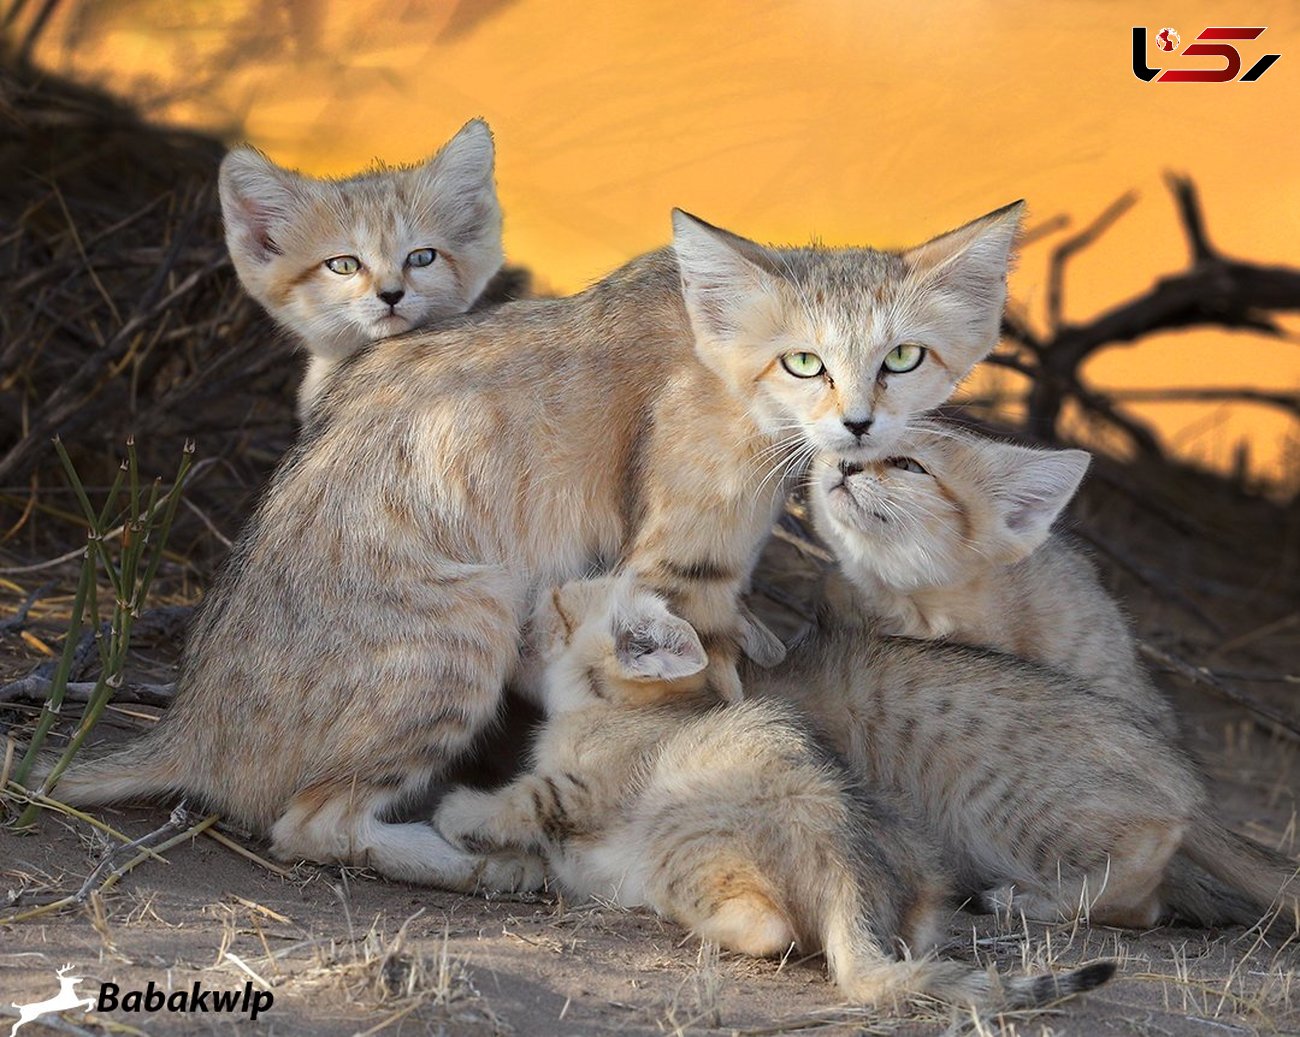 روایت اتفاقی نادر و زیبا در وحشی ترین نقطه ایران / گربه شنی بچه هایش را به شکارچی سپرد!